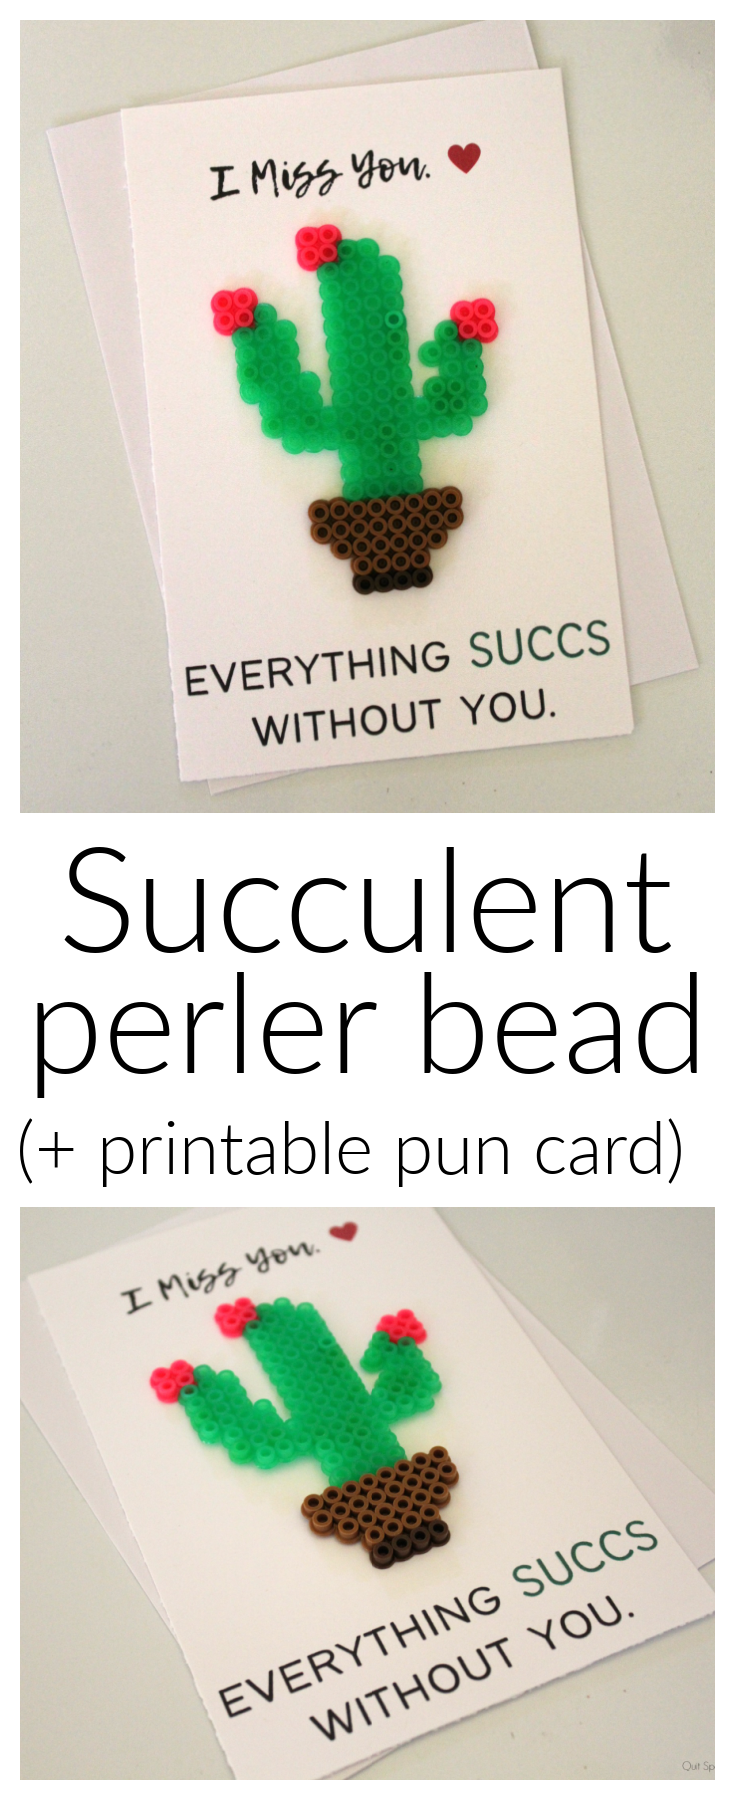 Succulent Perler Bead Card